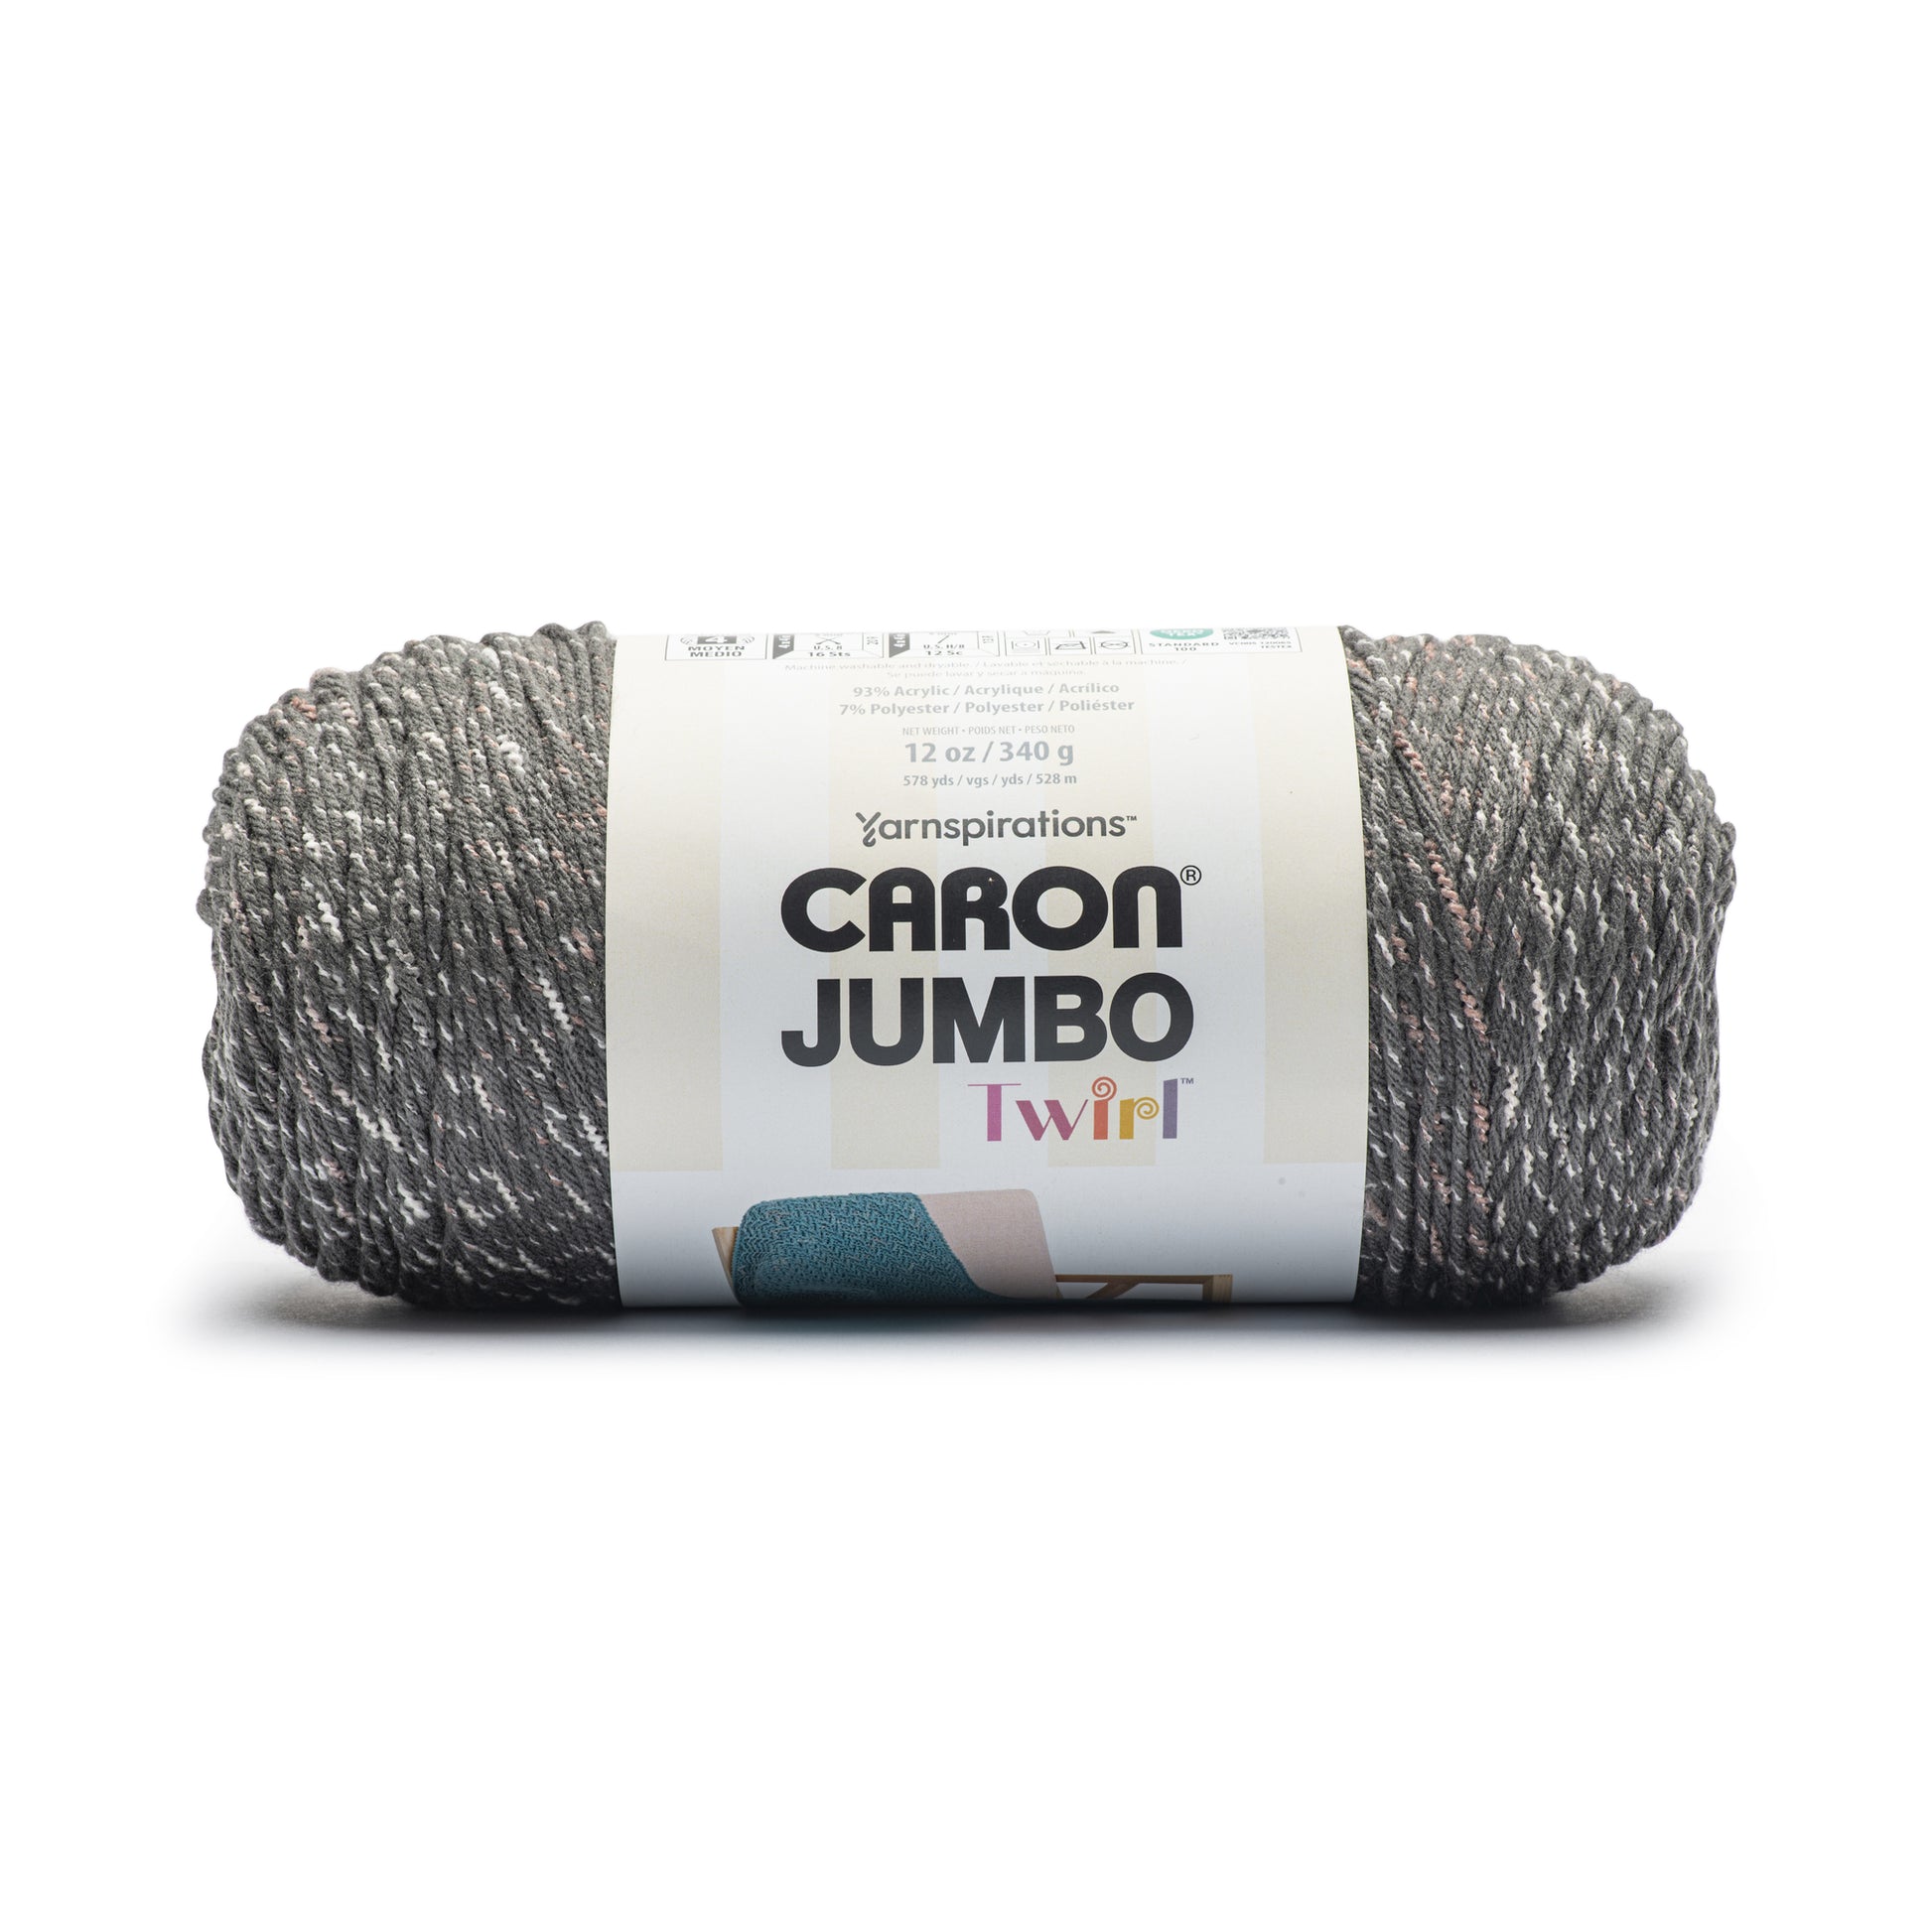 Caron Jumbo Twirl Yarn (340g/12oz) Medium Gray Ribbon